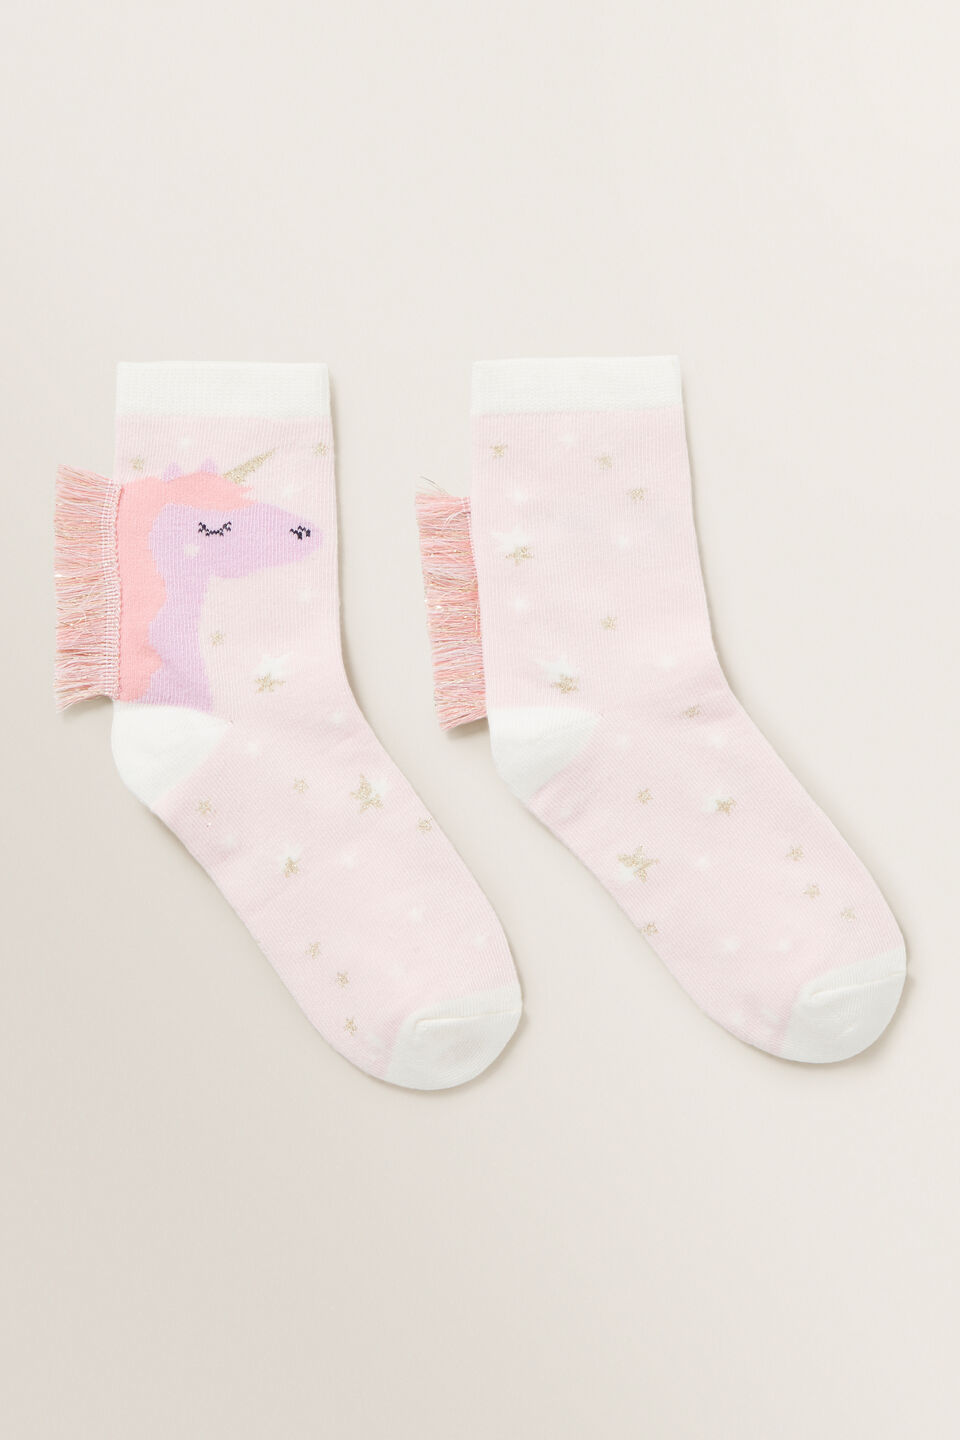 Unicorn Fringe Socks  